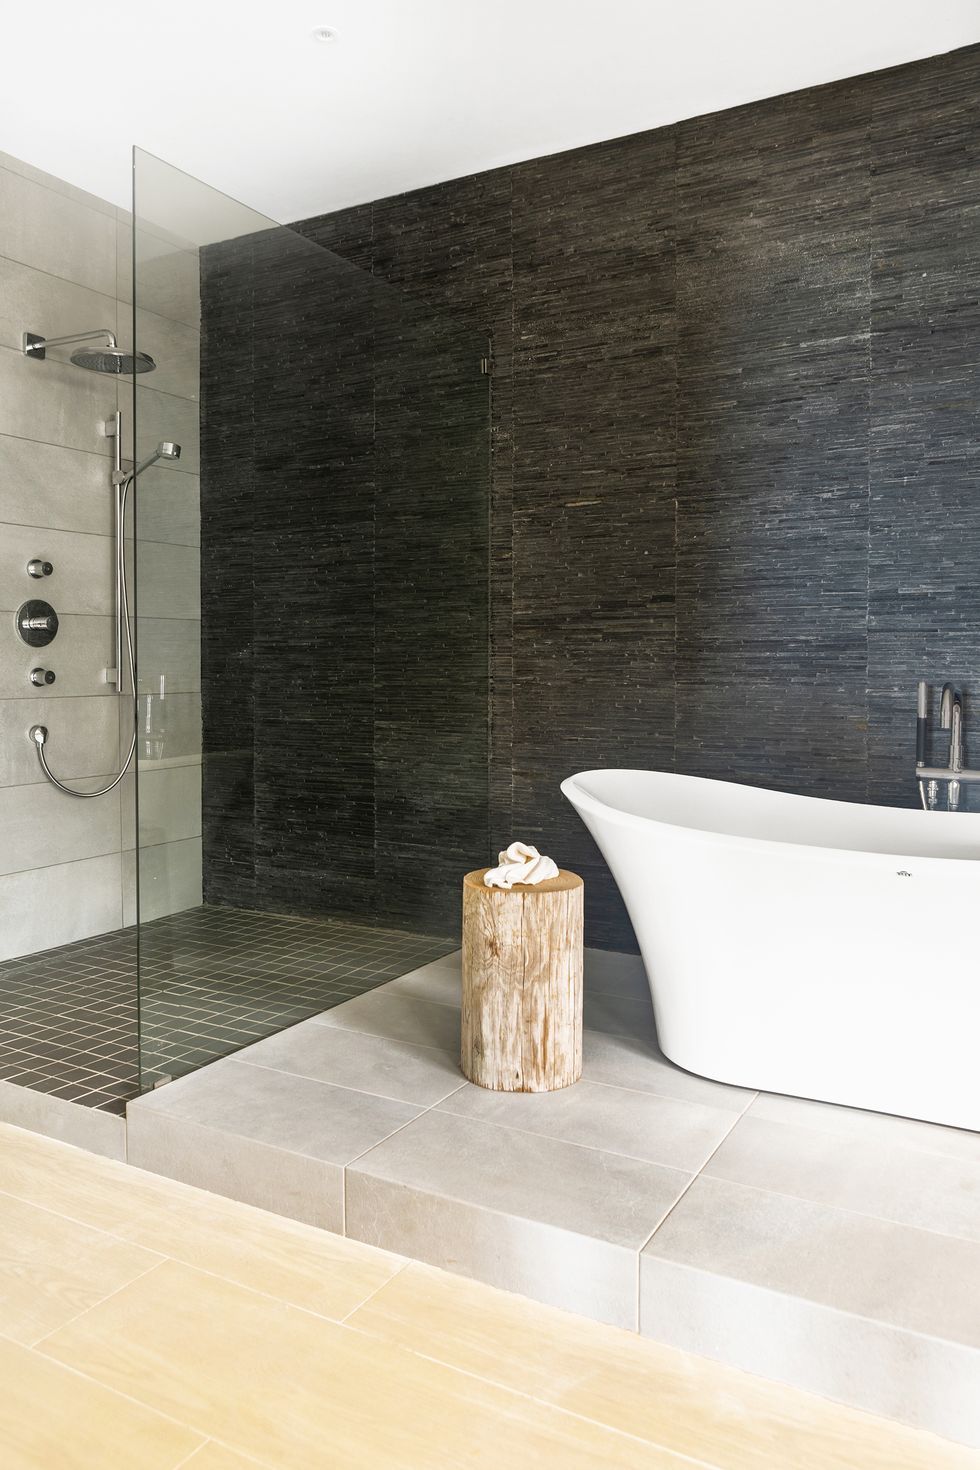 Bathroom Tile Design Ideas Images - Bathroom Tile IDeas IshkaDesigns Whitehouse 28 1603747557